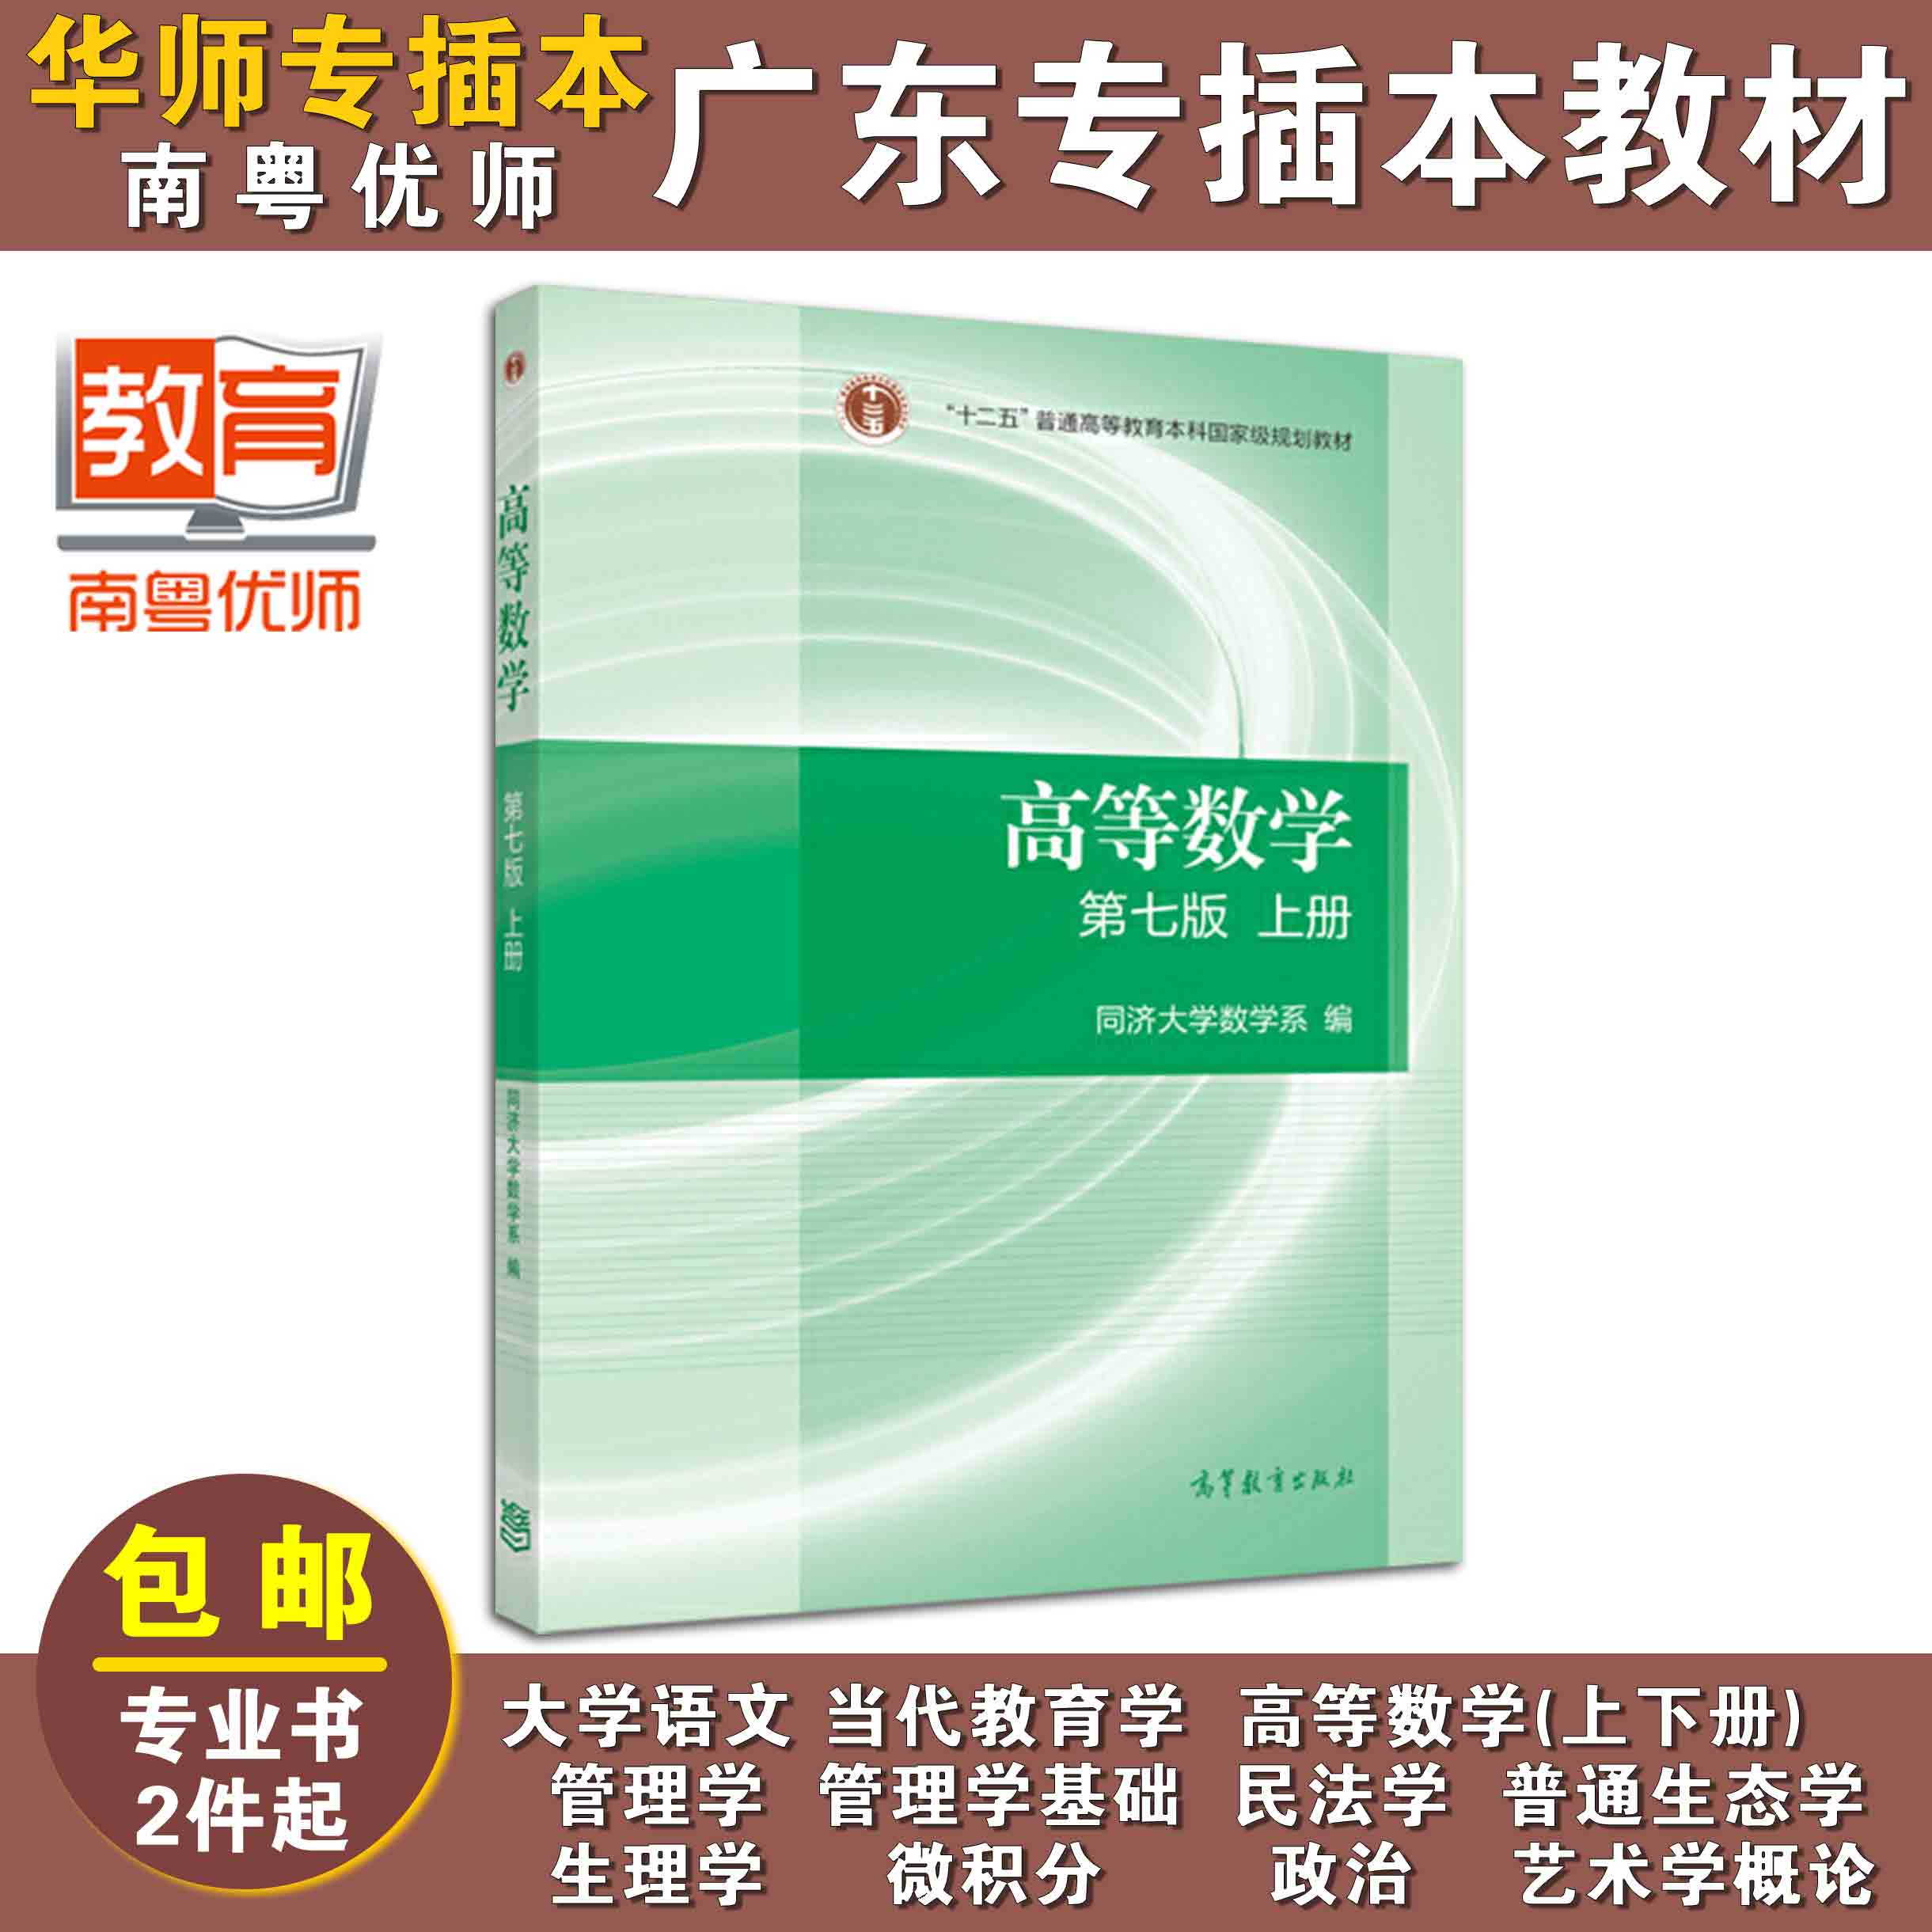 高等数学(第七版)(上册),同济大学数学系,高等教育出版社